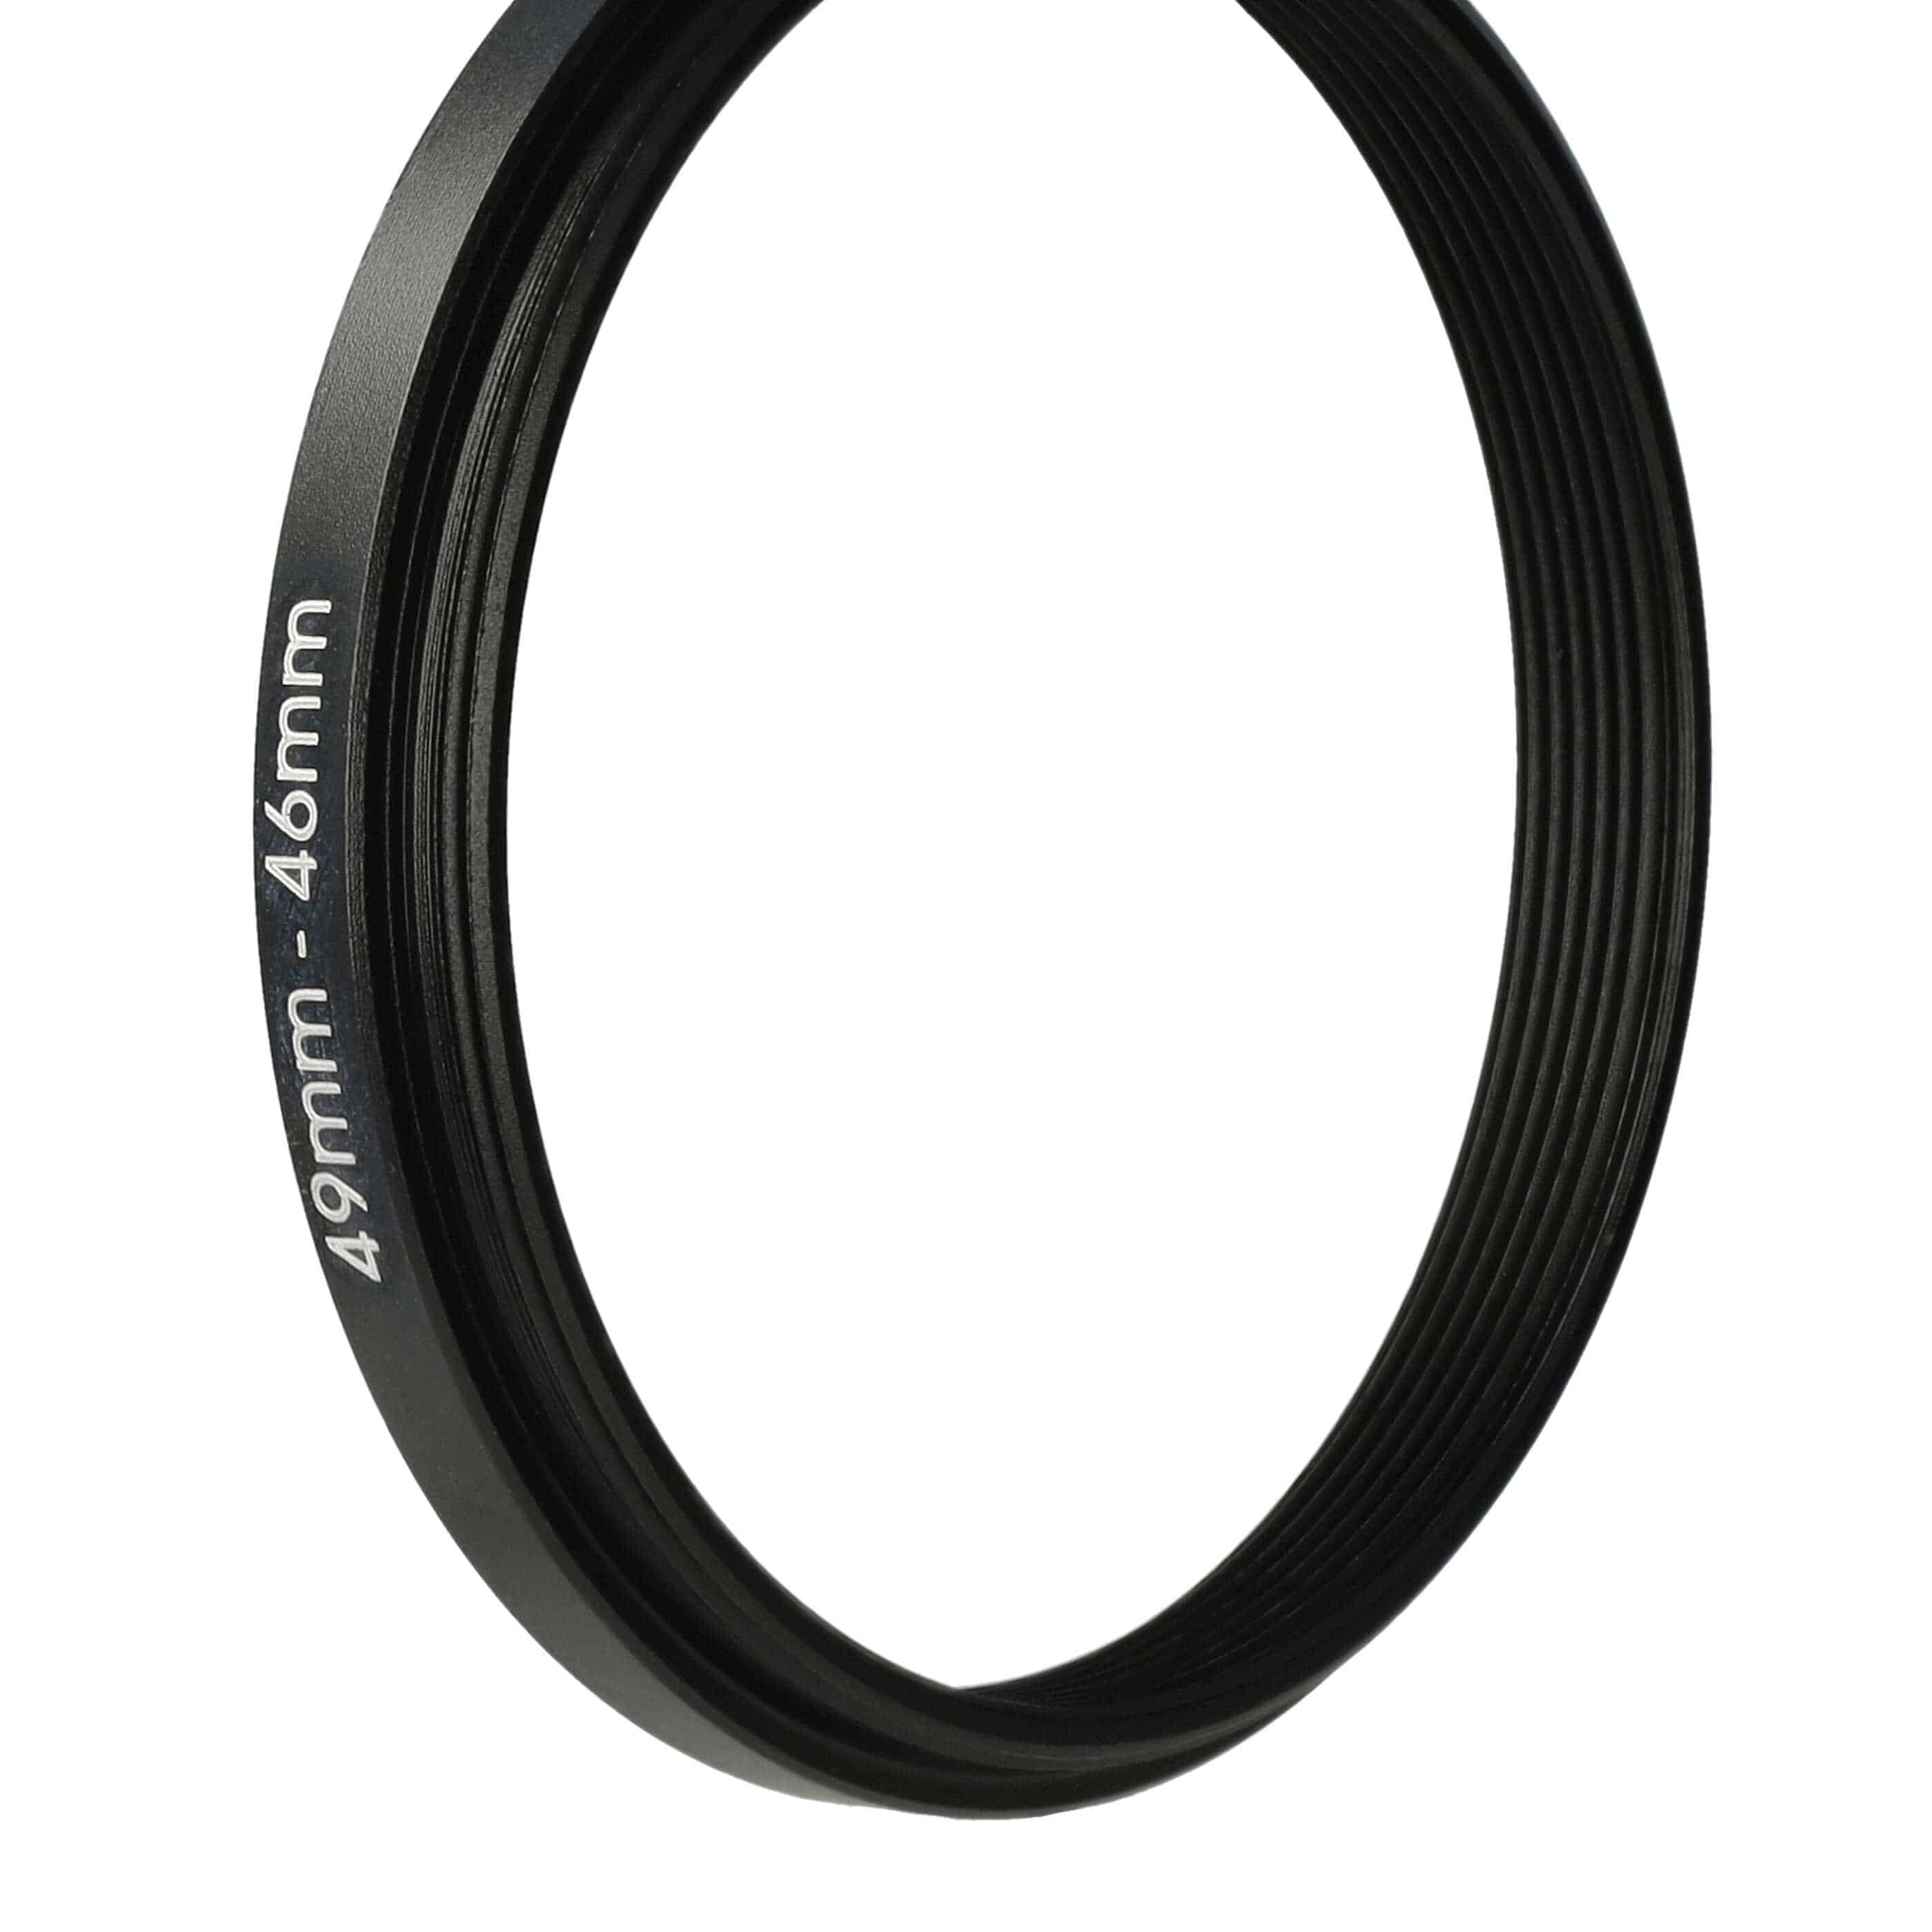 Step-Down-Ring Adapter von 49 mm auf 46 mm passend für Kamera Objektiv - Filteradapter, Metall, schwarz